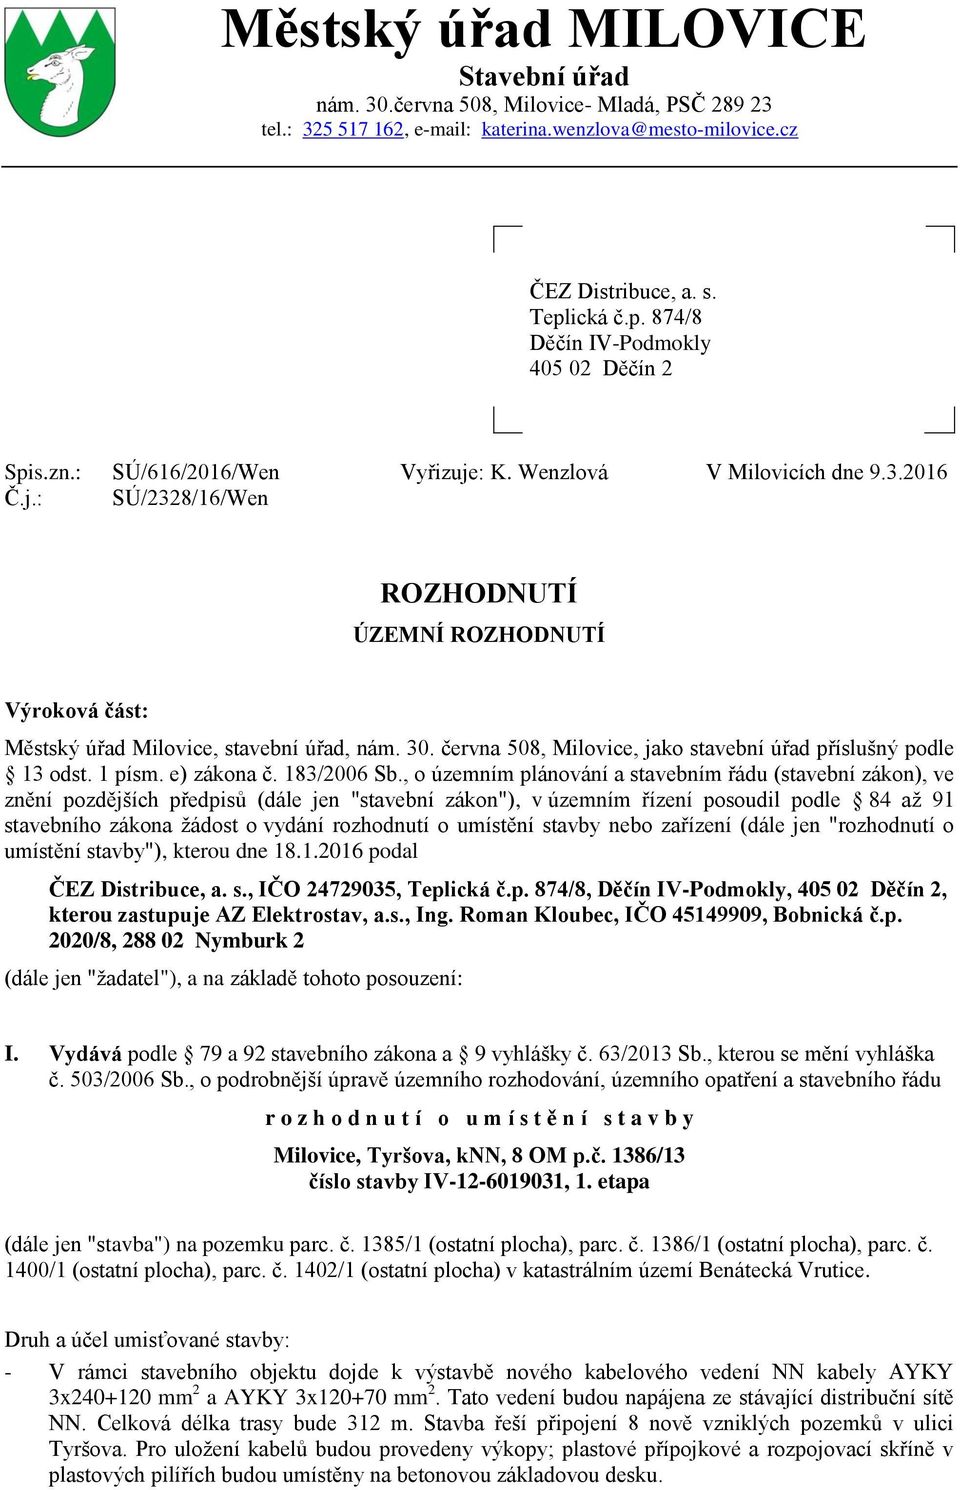 30. června 508, Milovice, jako stavební úřad příslušný podle 13 odst. 1 písm. e) zákona č. 183/2006 Sb.